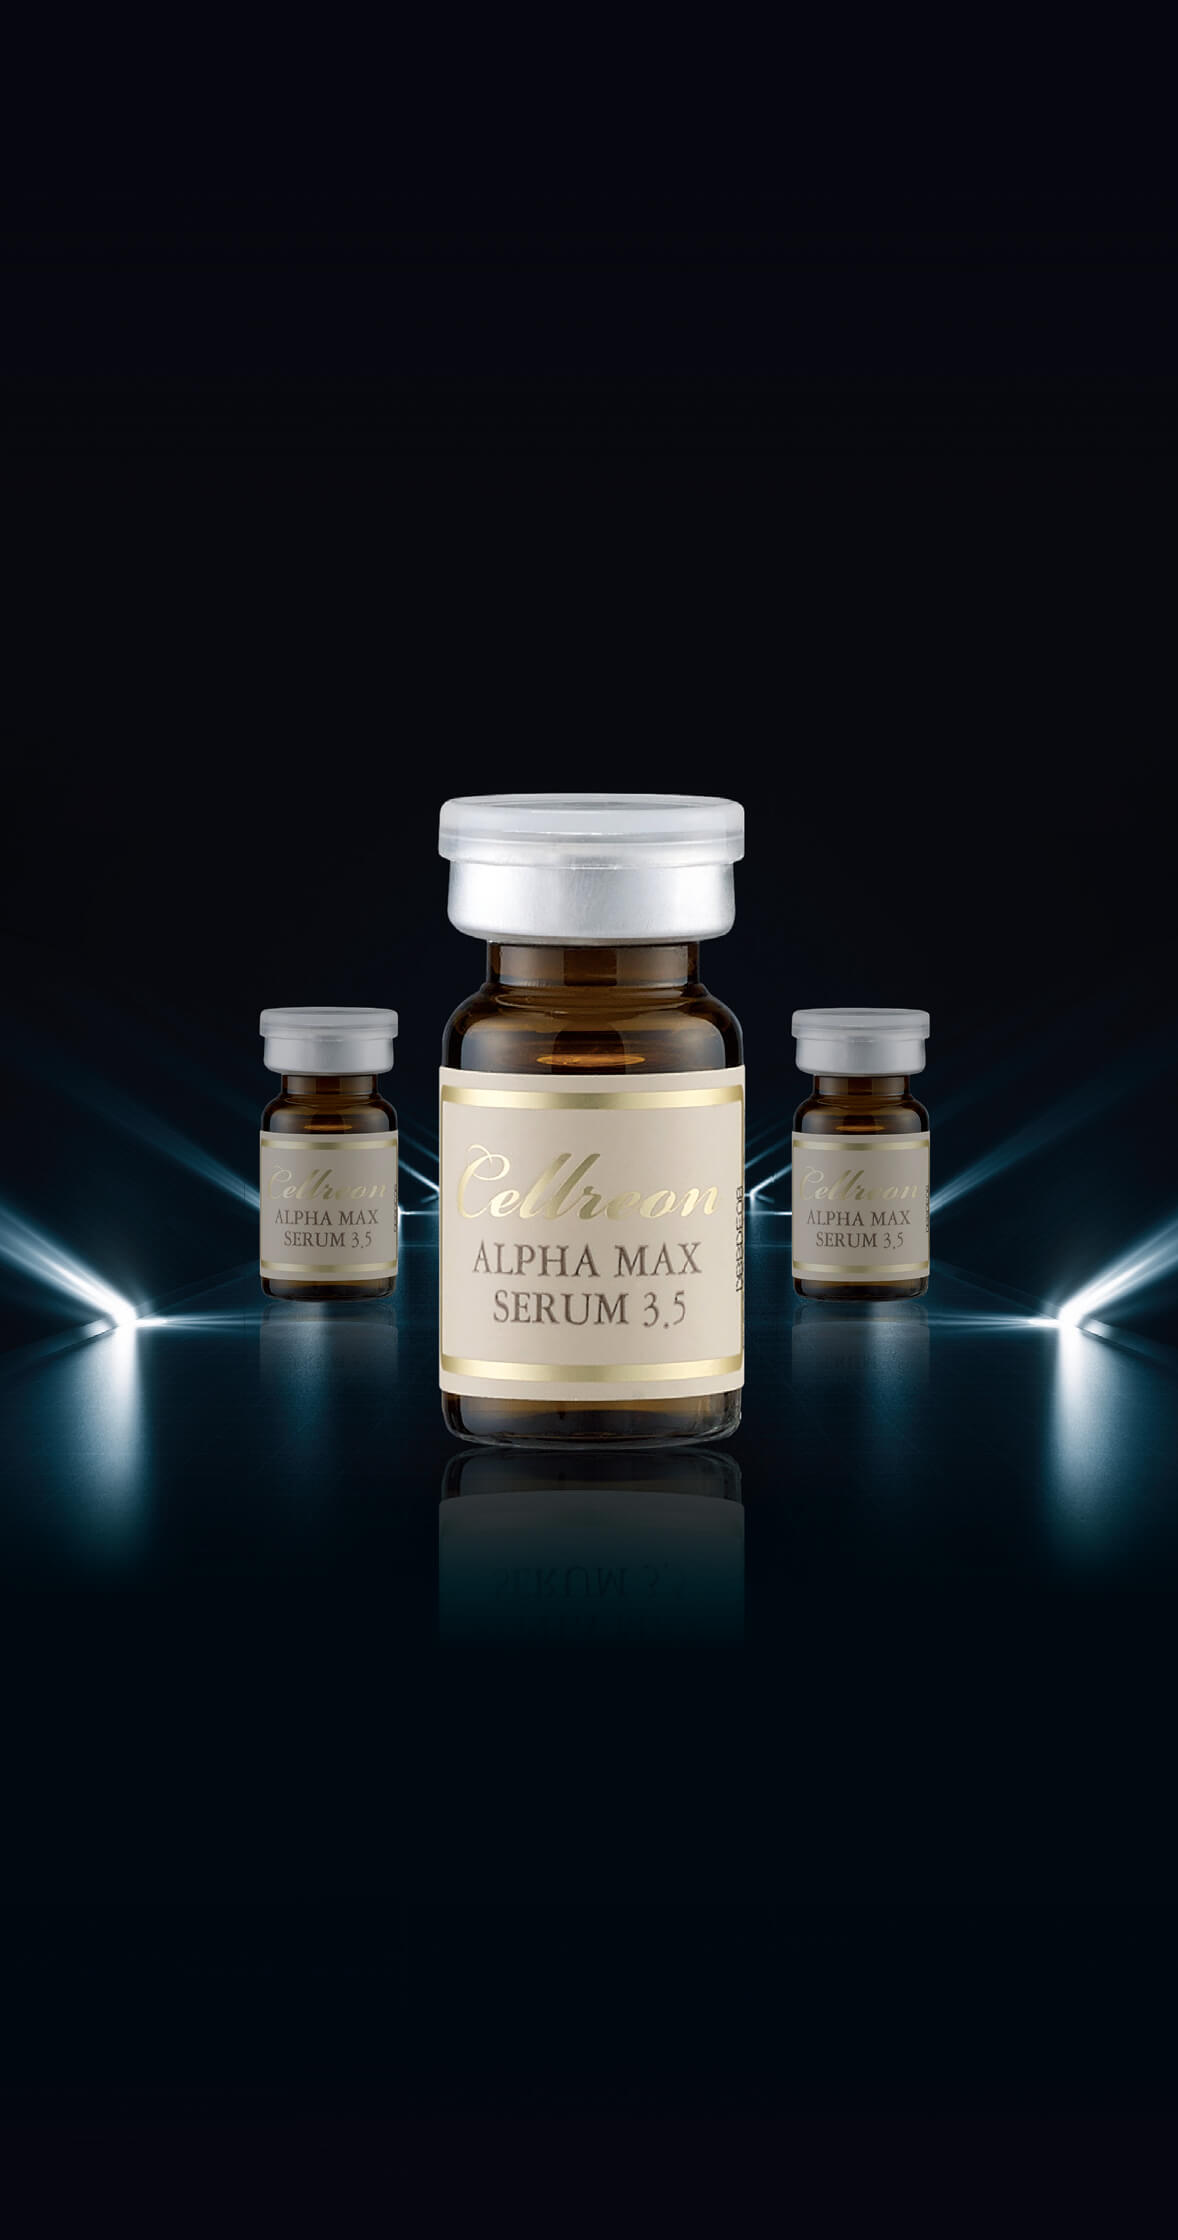 Three bottles of Alpha Max 3.5 Eye Serum against a black background in a triangular fashion